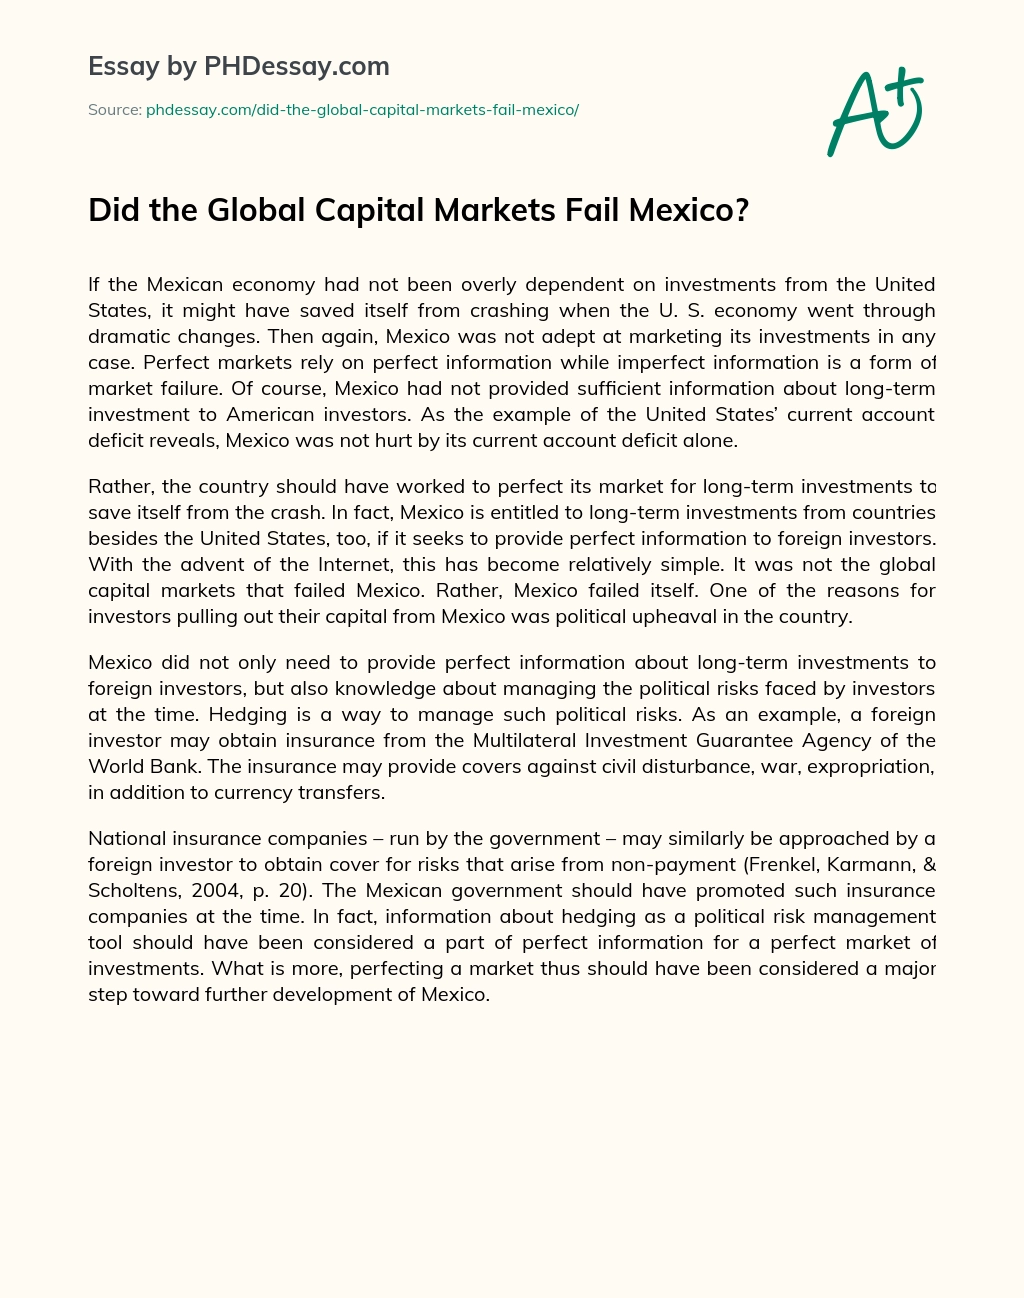 Did the Global Capital Markets Fail Mexico? essay